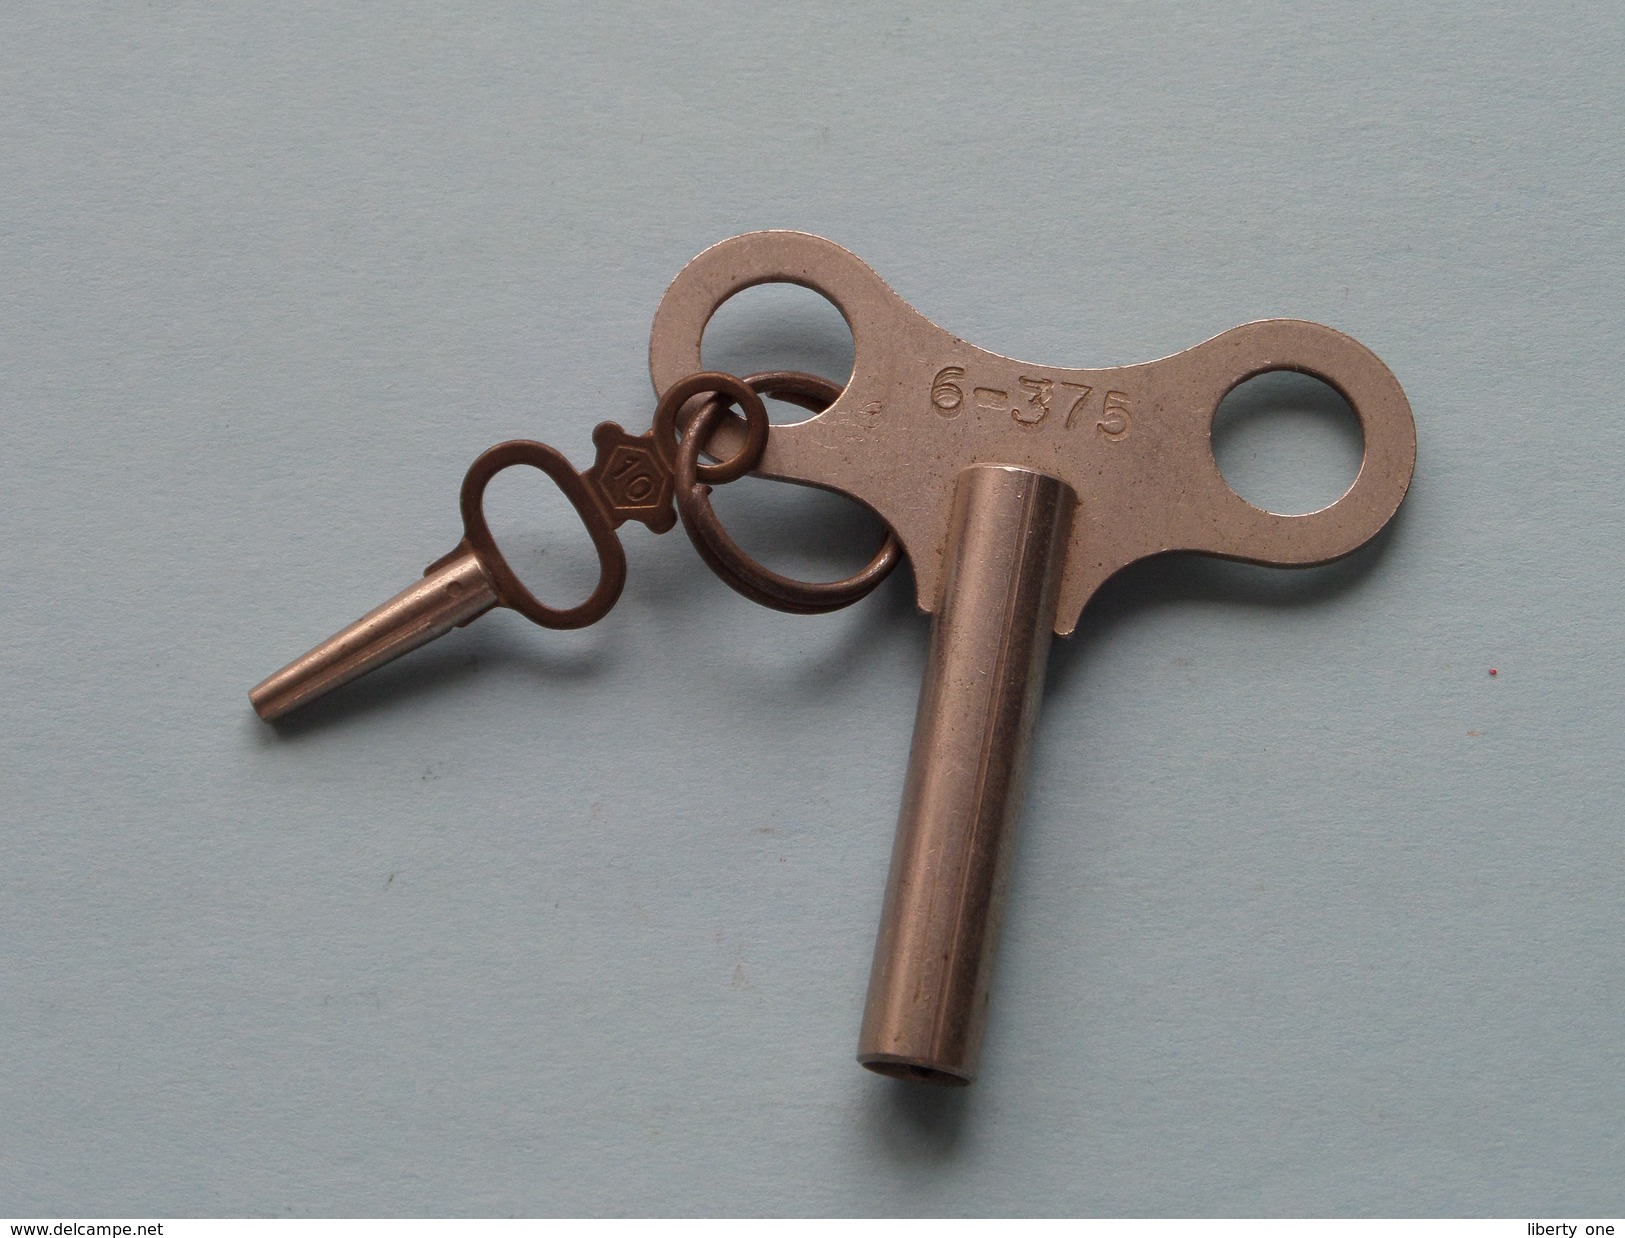 Key / Sleutel Voor Klok / Horloge ( 6-375 ) With Small Key N° 10 ( Metal - Zie Foto Details ) !! - Glocken